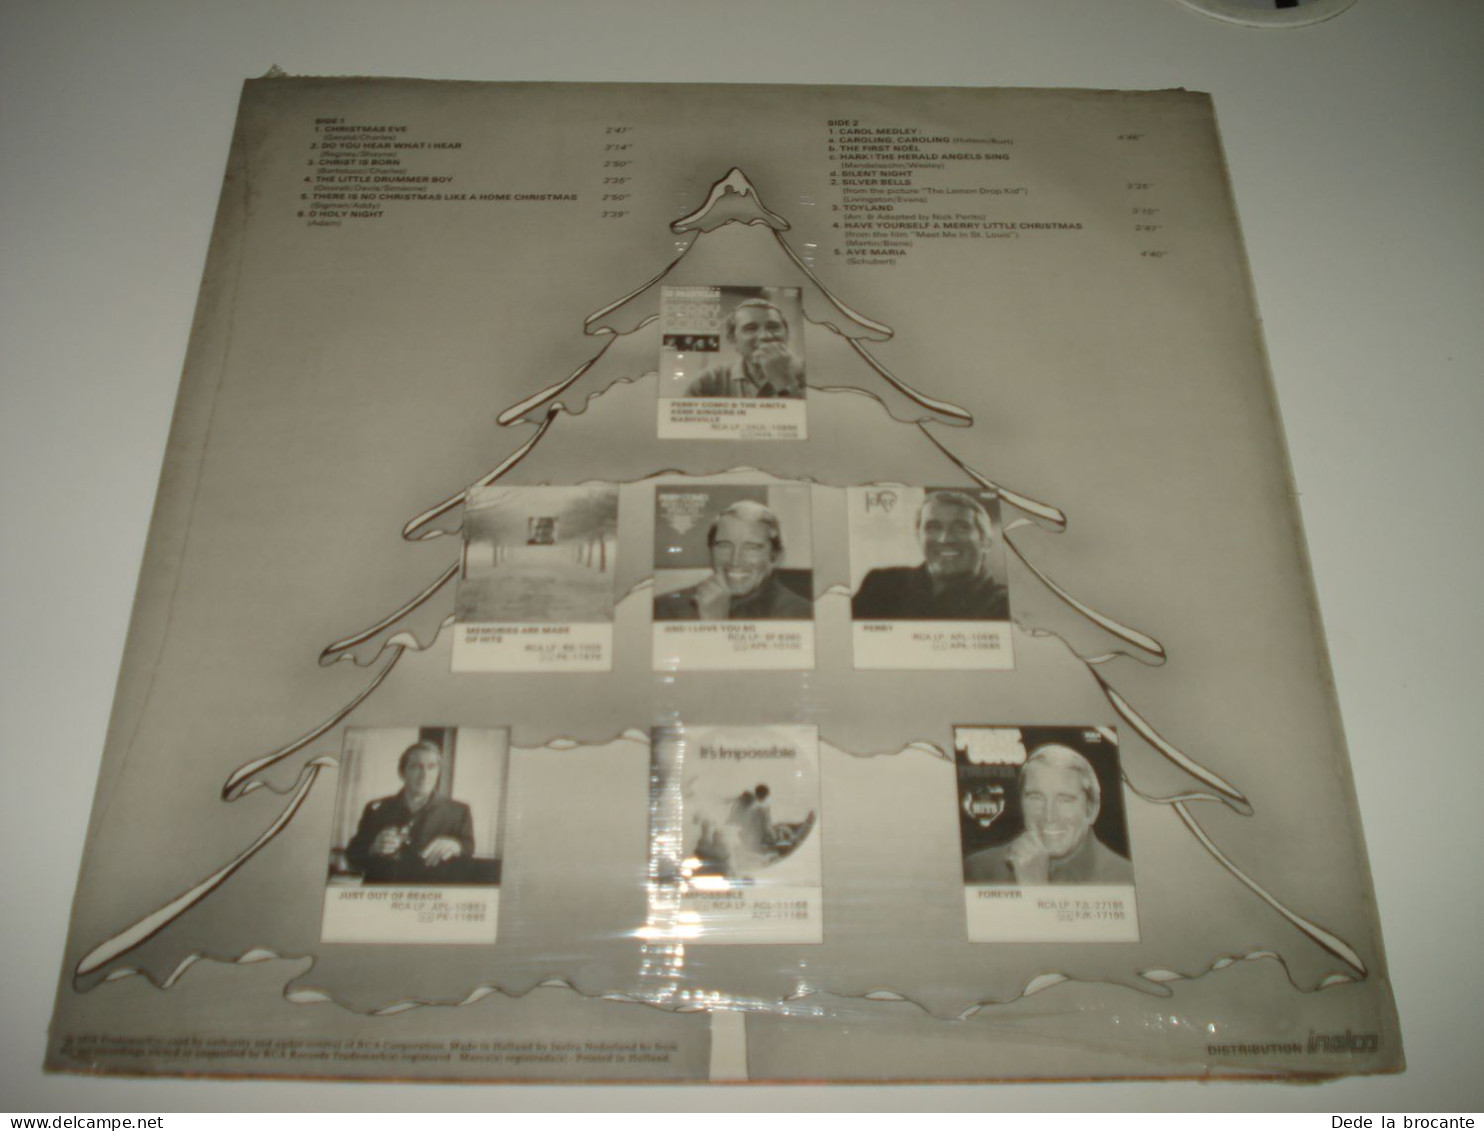 B4 / Perry  Como Chrismas Album - LP - RCA -  ANL 11929 - Holland 1976 - Sealed - No Cut - Non Ouvert - Christmas Carols